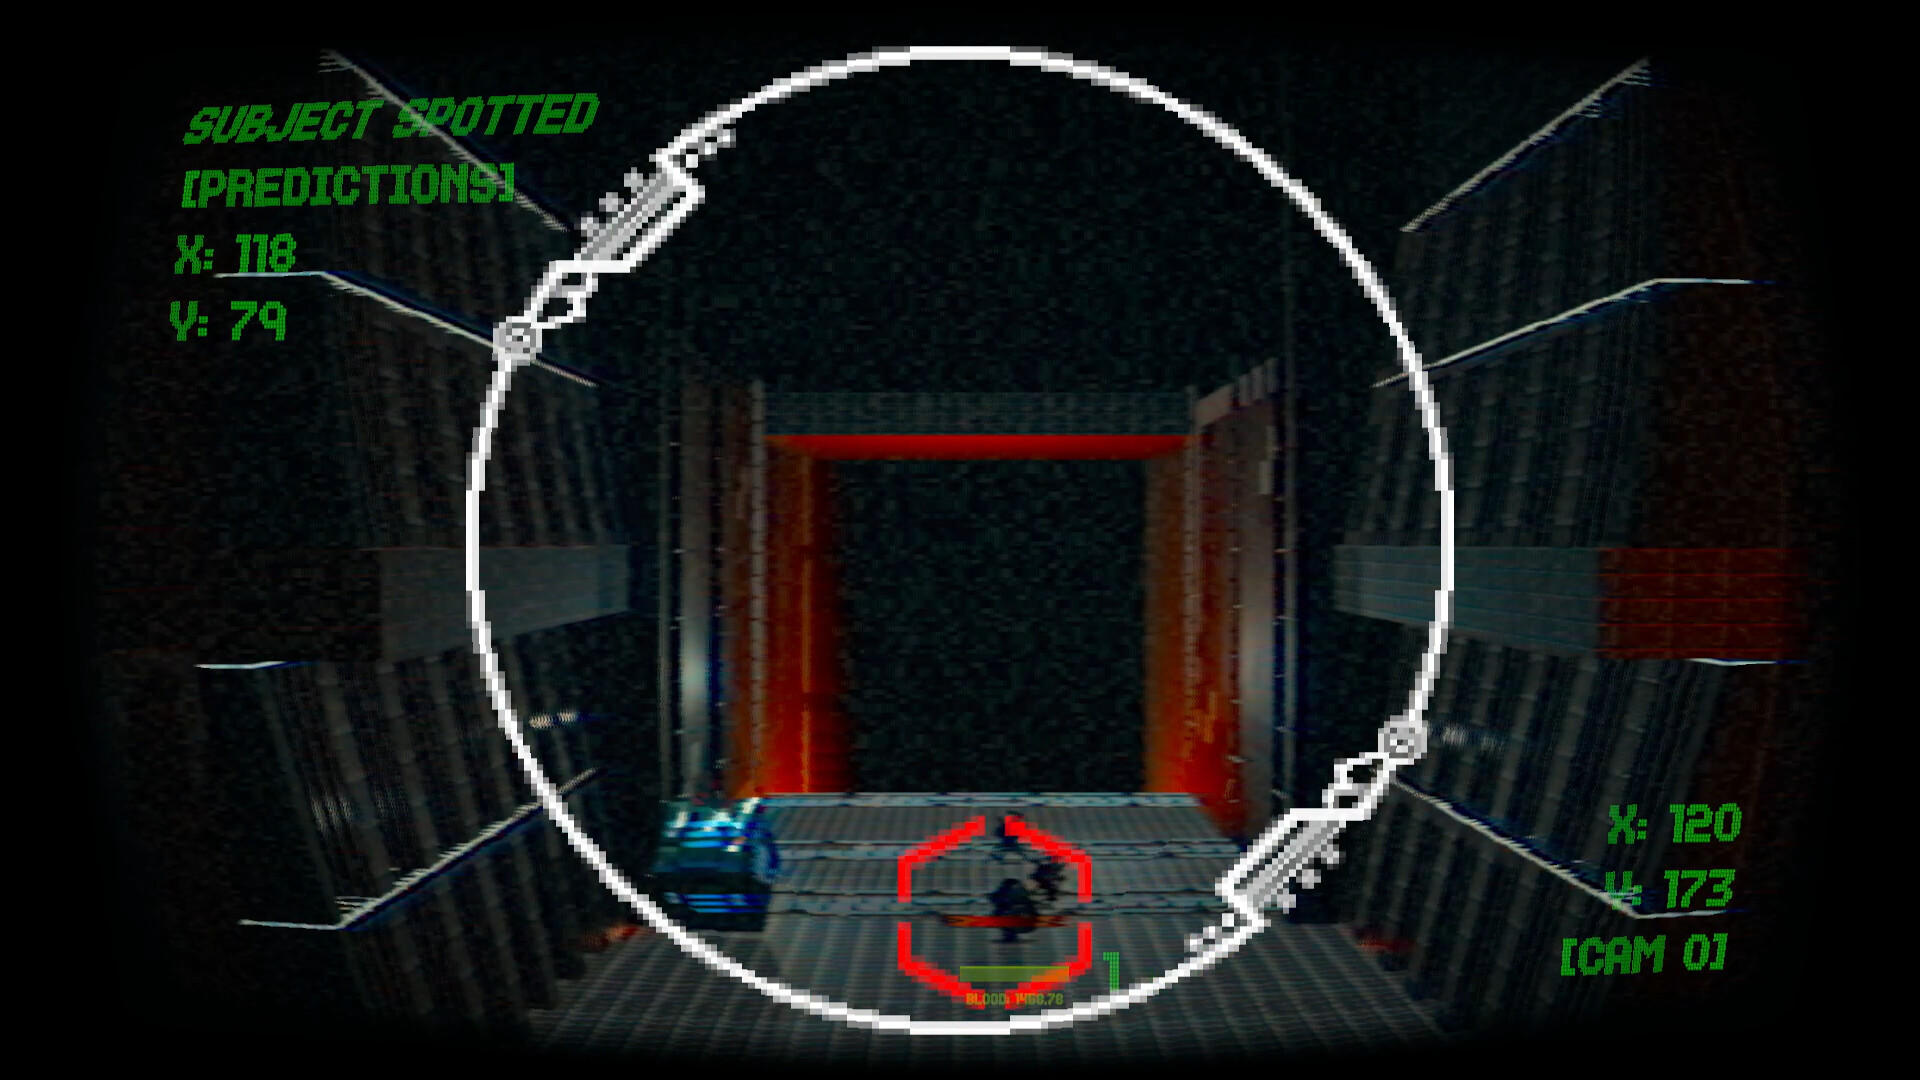 BLEED RUNNER screenshot game